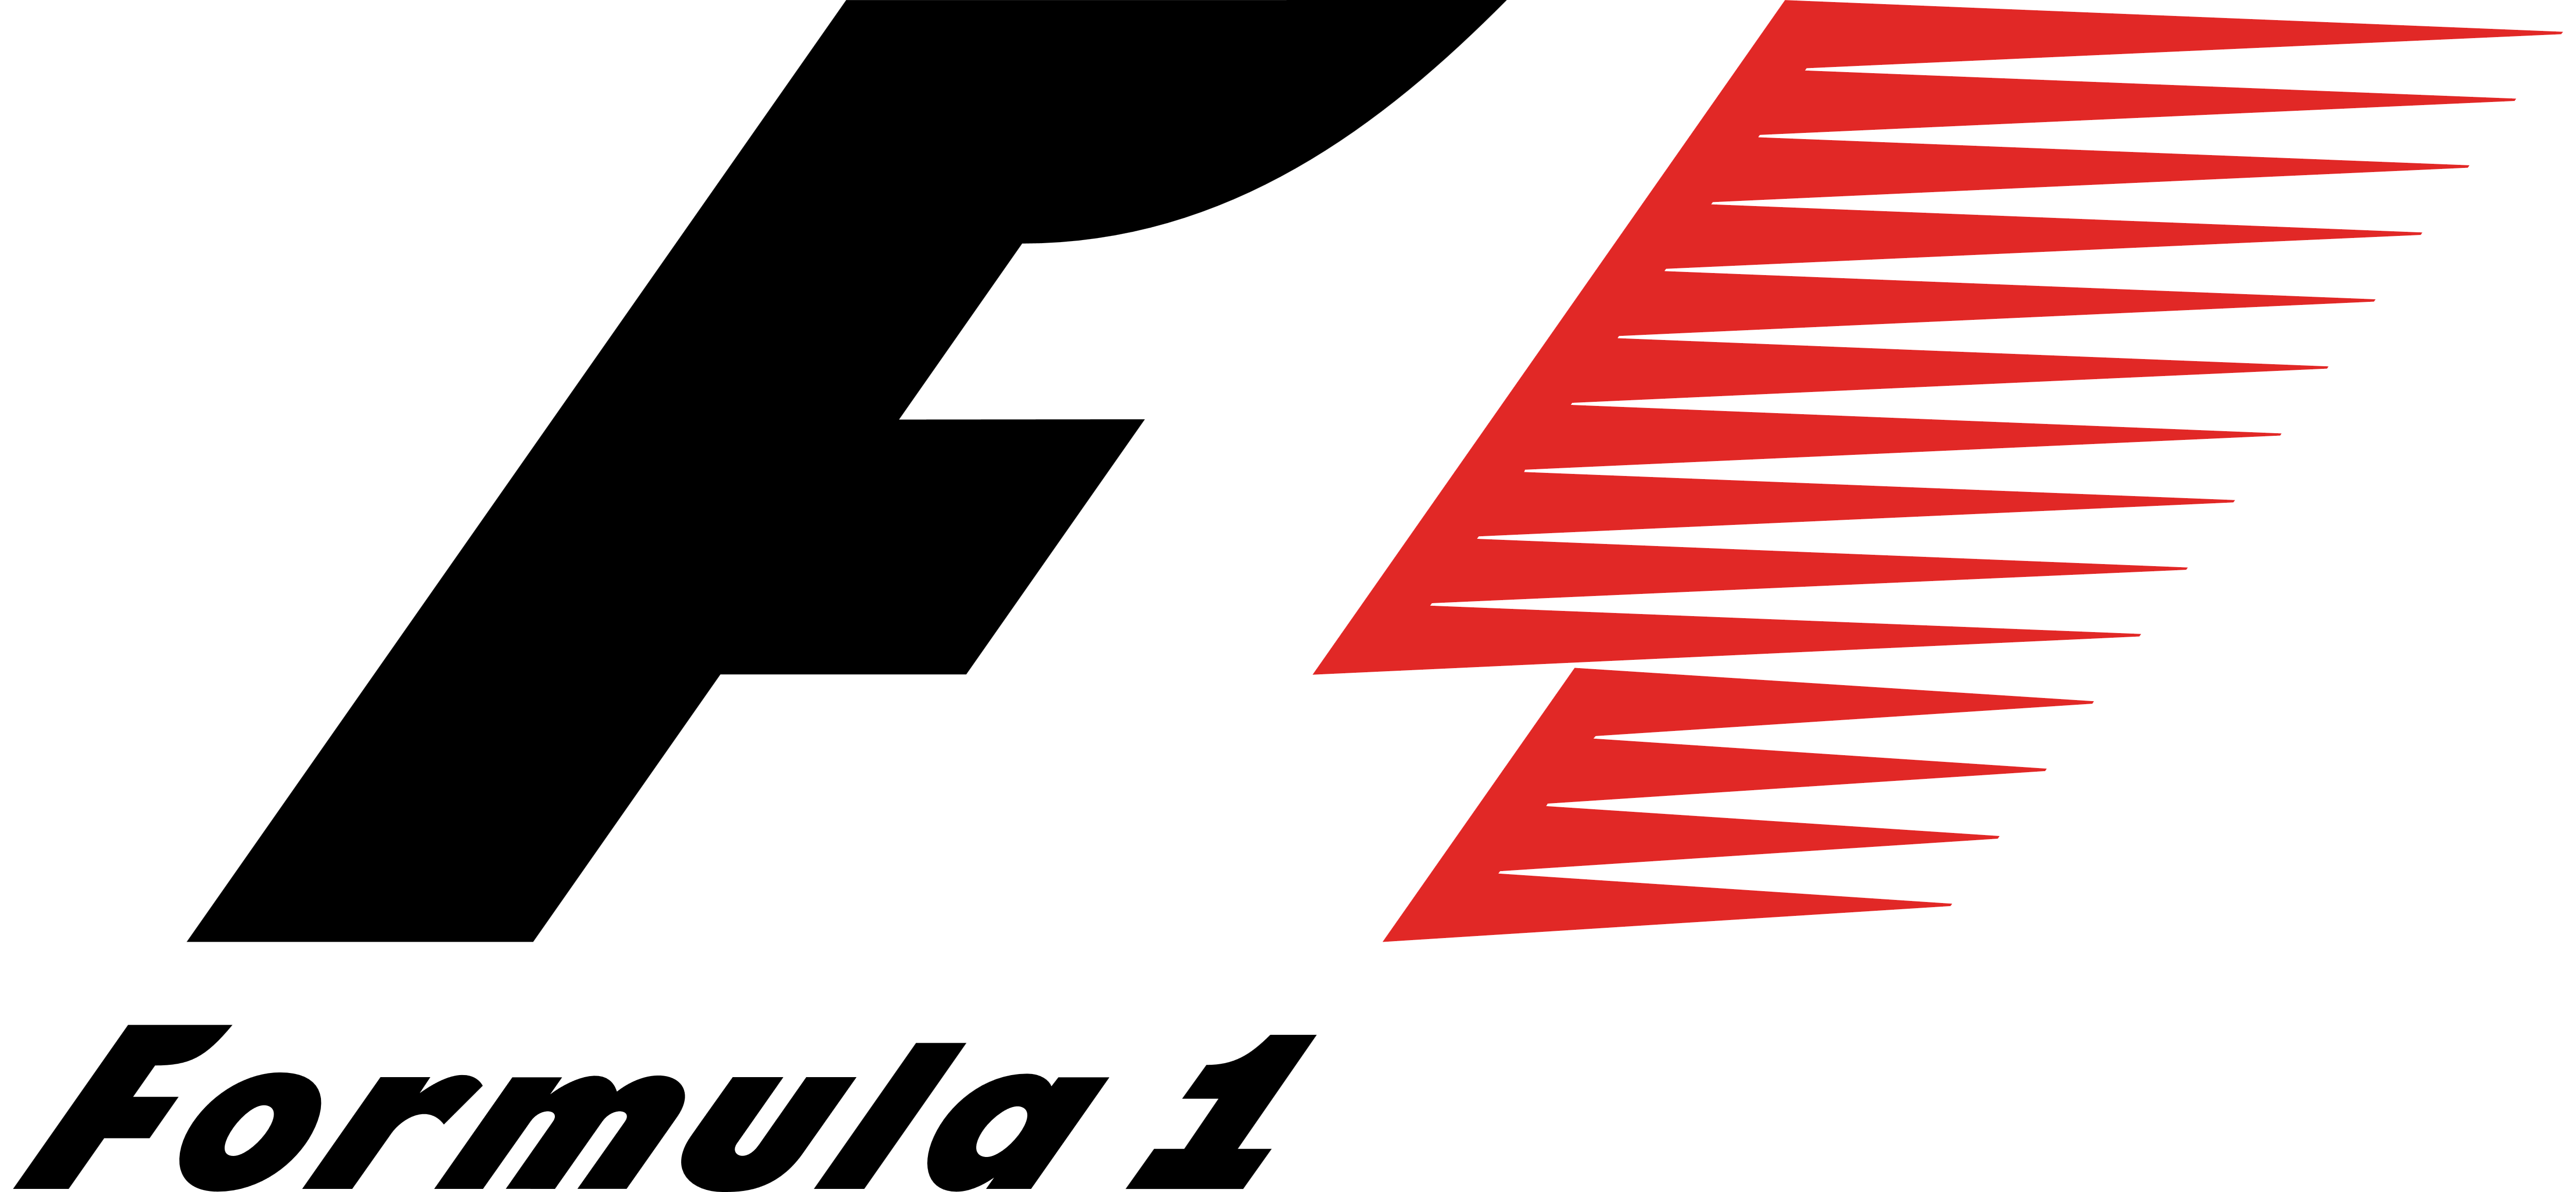 Formula 1 – Logos Download